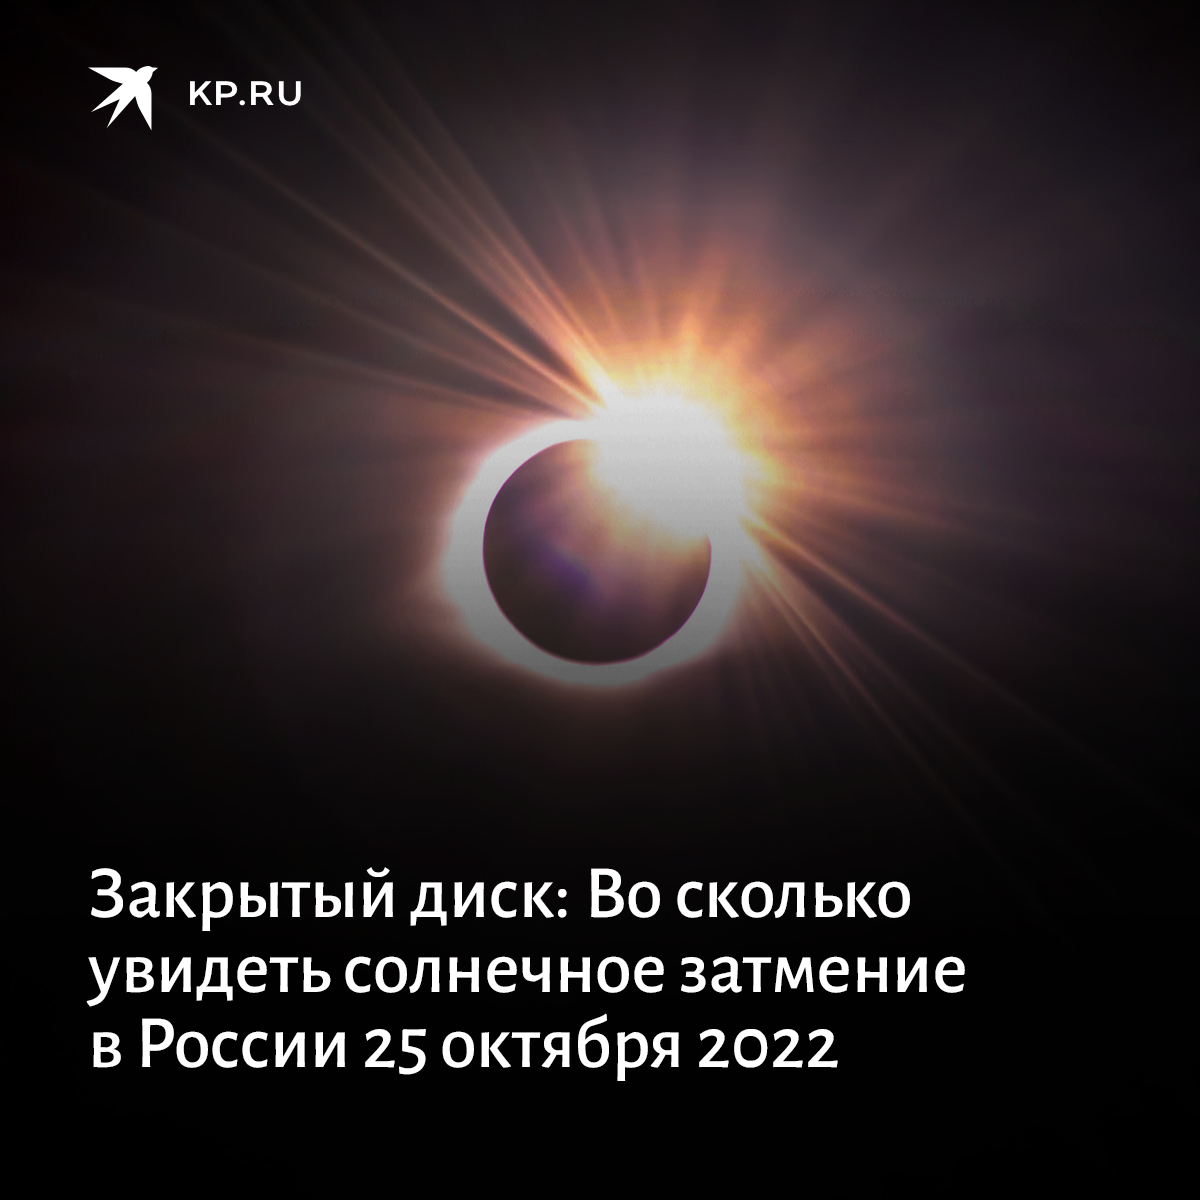 Лунное затмение московское время. Солнечное затмение. Солнечные и лунные затмения. Затмение 25 октября 2022. Солнечное затмение 2022.